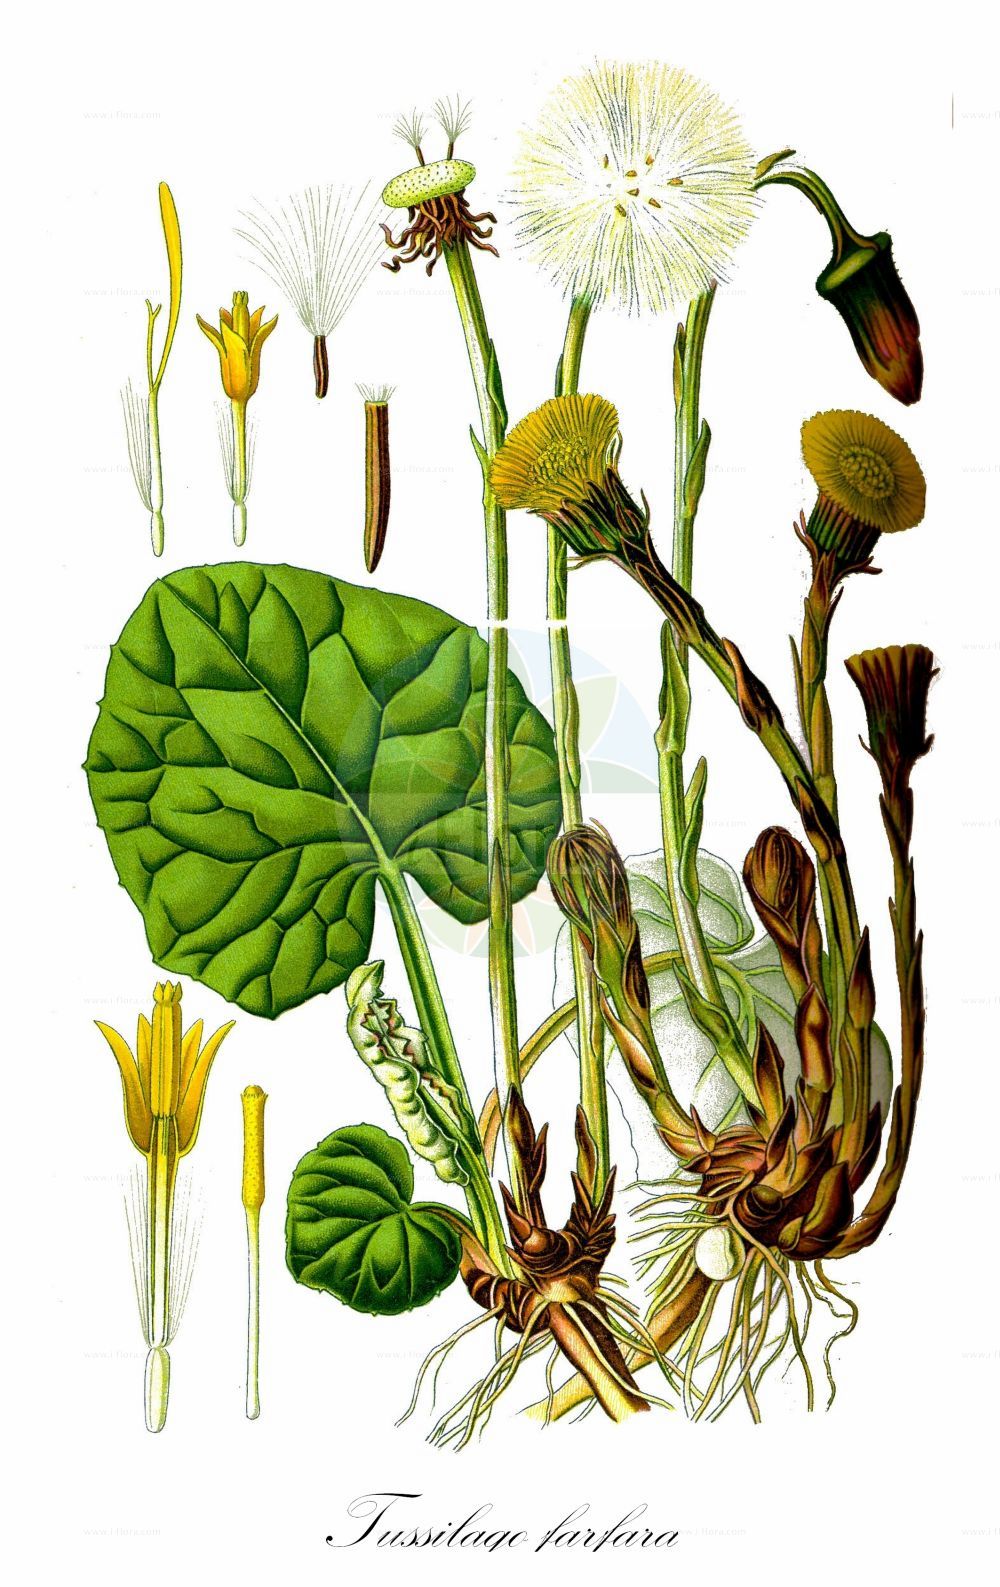 Historische Abbildung von Tussilago farfara (Huflattich - Colt's-foot). Das Bild zeigt Blatt, Bluete, Frucht und Same. ---- Historical Drawing of Tussilago farfara (Huflattich - Colt's-foot). The image is showing leaf, flower, fruit and seed.(Tussilago farfara,Huflattich,Colt's-foot,Tussilago alpestris,Tussilago farfara,Tussilago umbertina,Huflattich,Colt's-foot,Tussilago,Huflattich,Coltsfoot,Asteraceae,Korbblütengewächse,Daisy family,Blatt,Bluete,Frucht,Same,leaf,flower,fruit,seed,Thomé (1885))